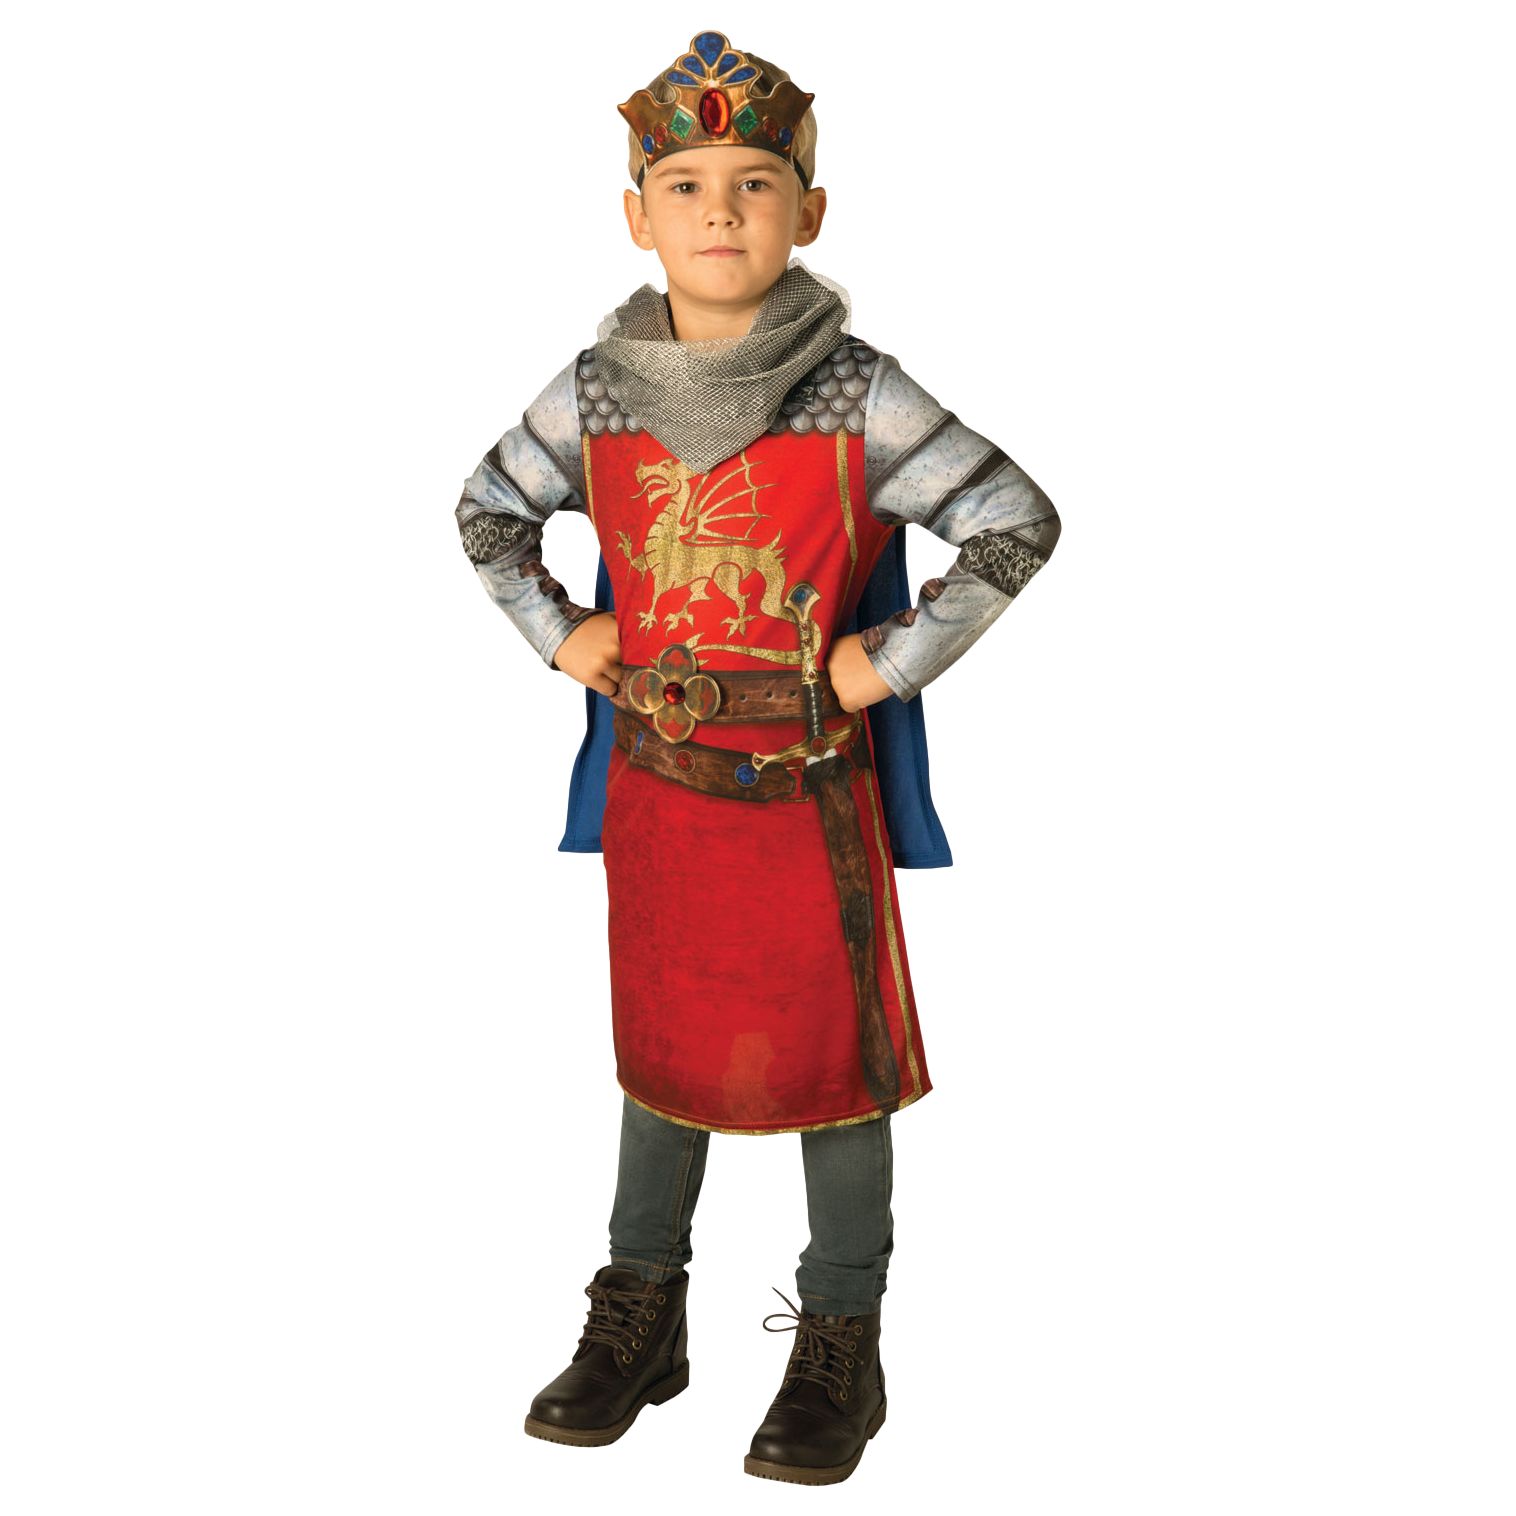 King Arthur Children's Costume.